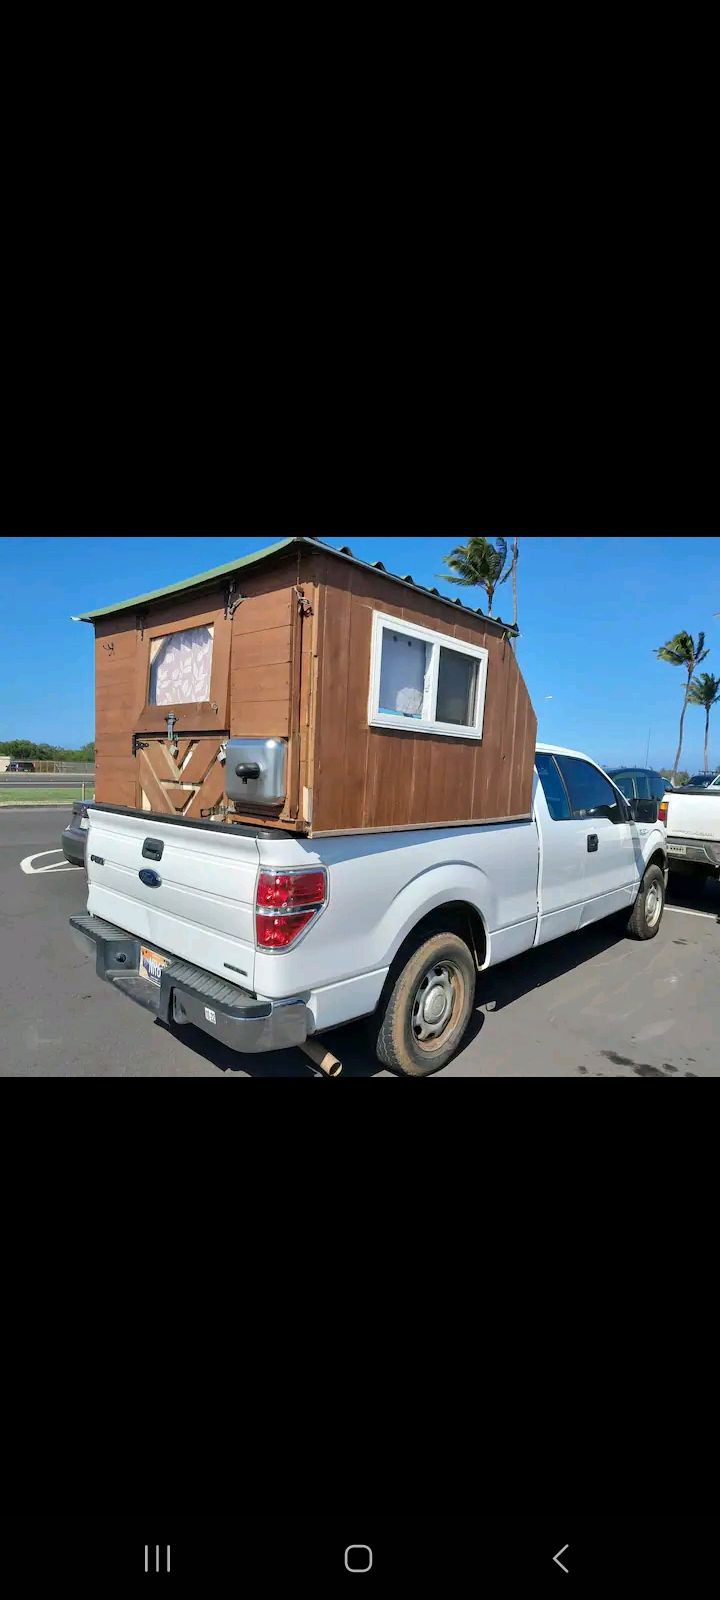 Beach Camper Truck